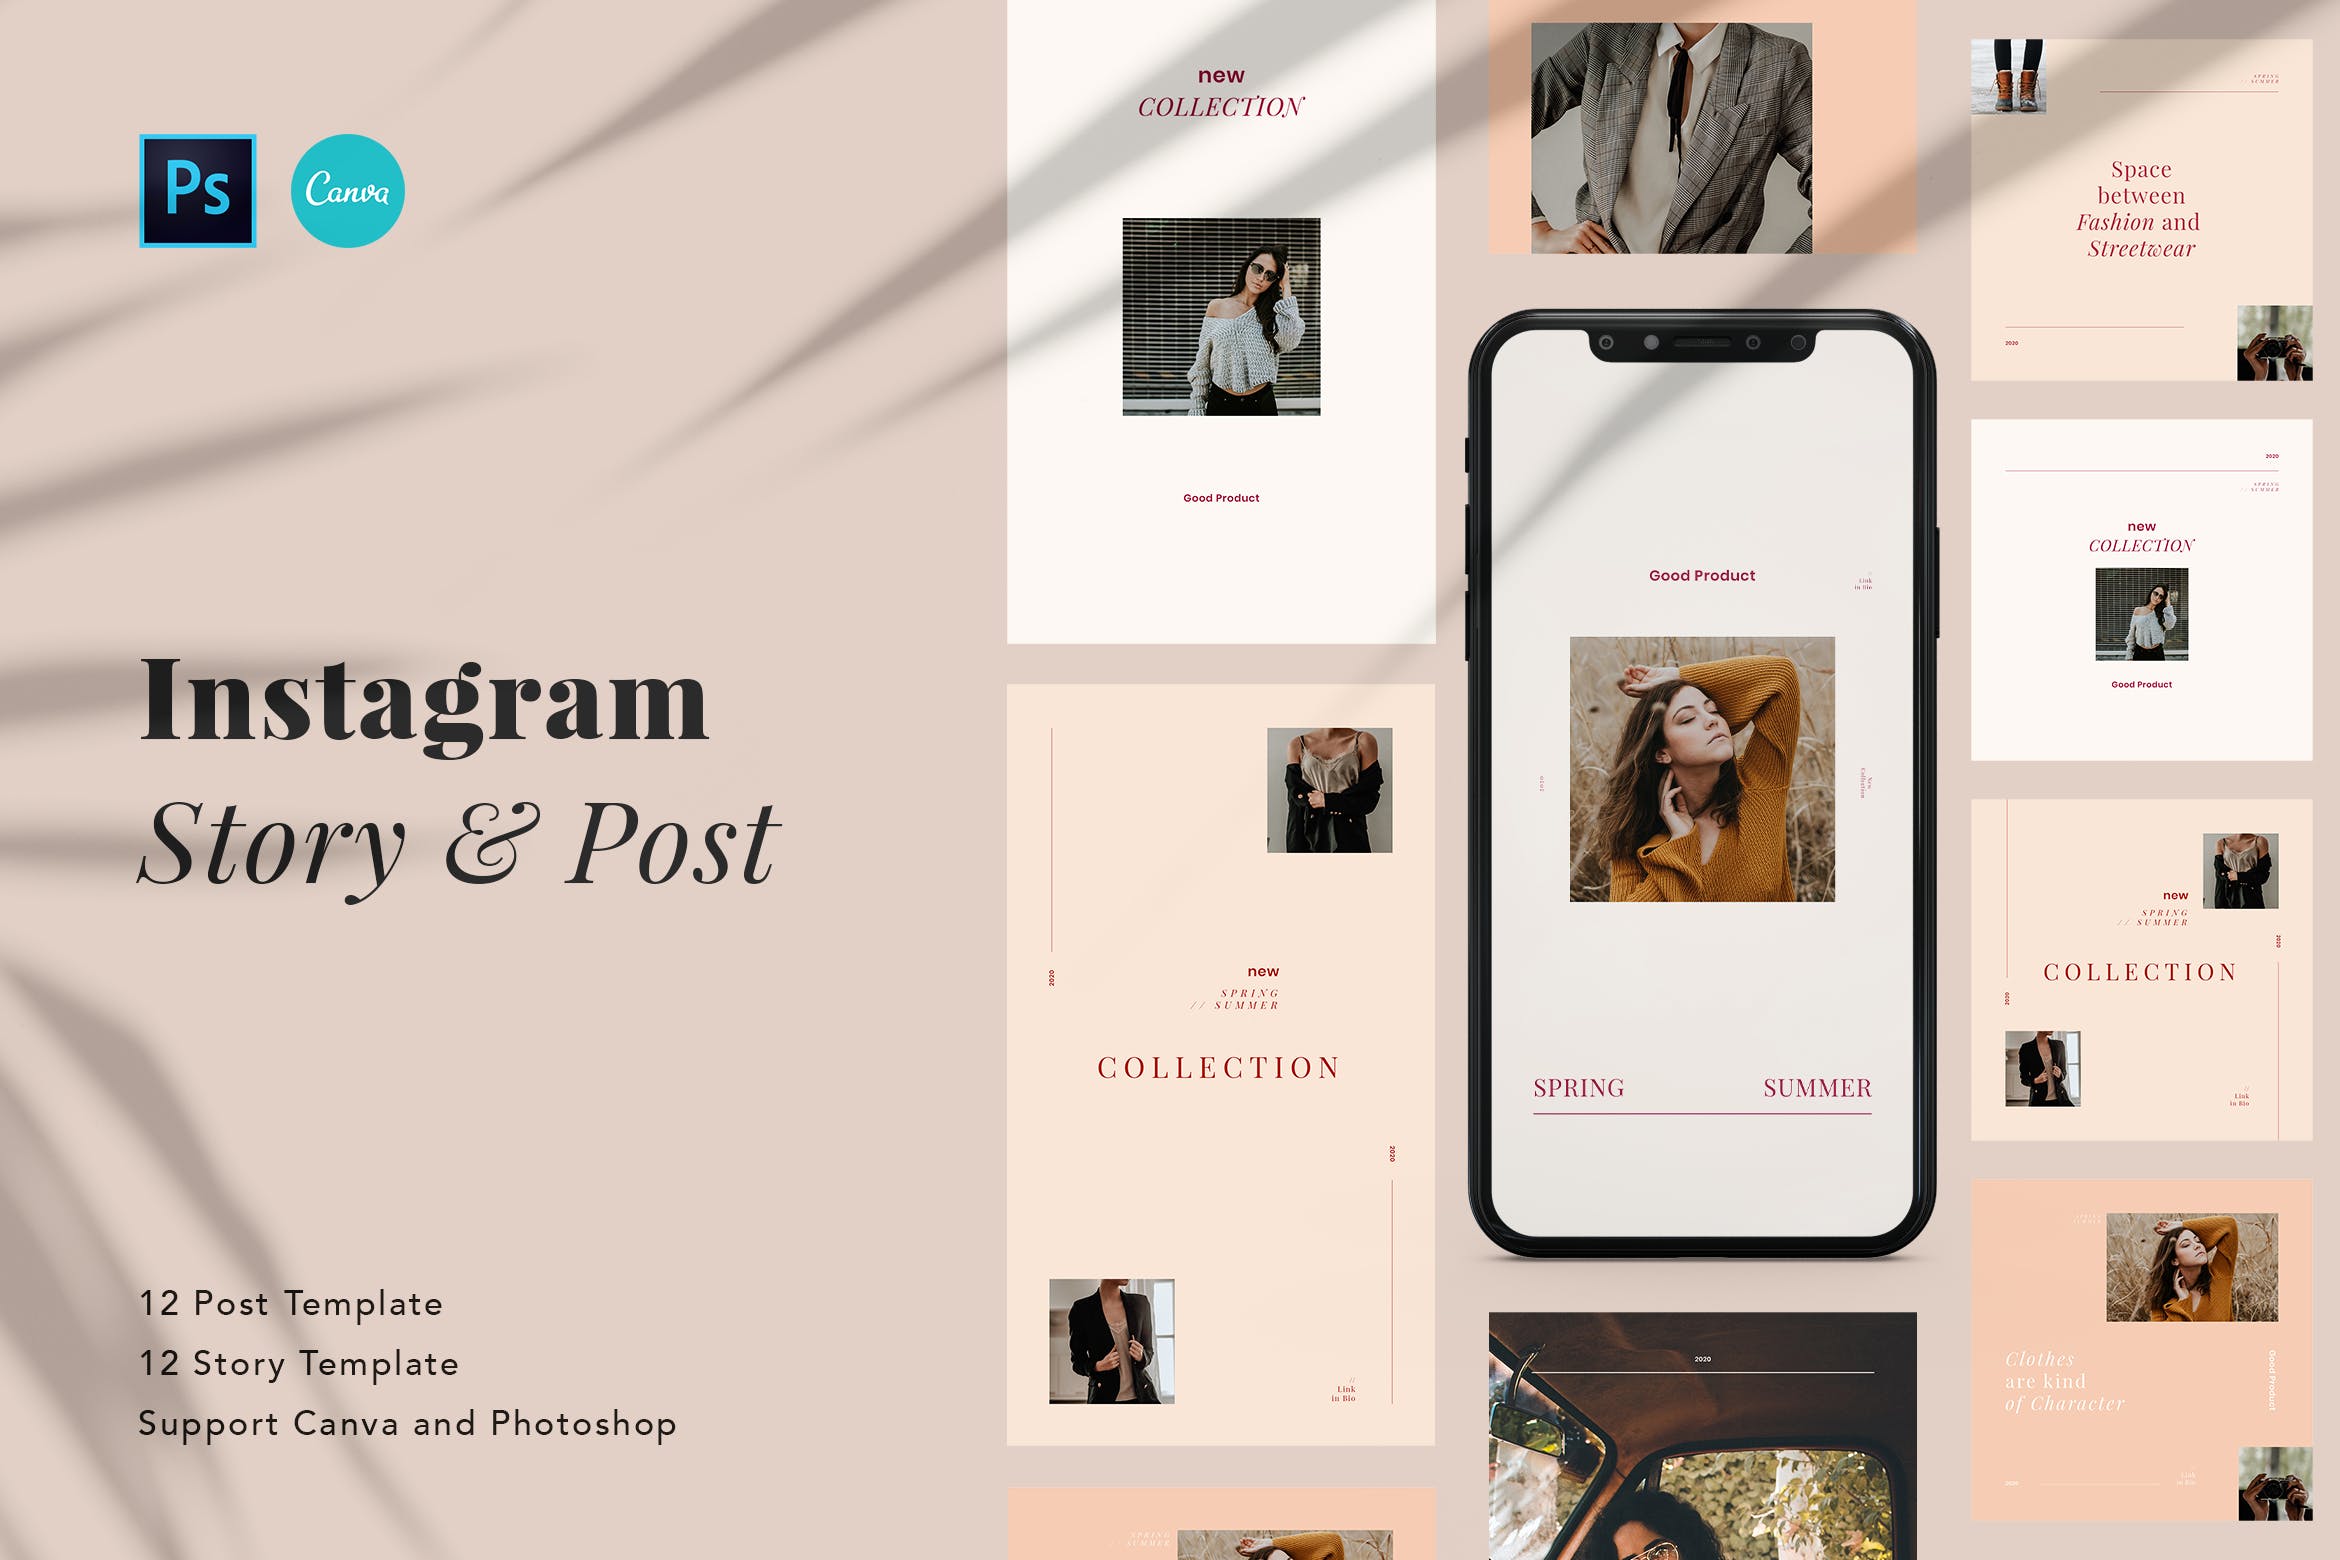 极简 时尚 主义Instagram帖子品牌故事社交素材 Minimalist Fashion Instagram Post & Story Canva设计素材模板